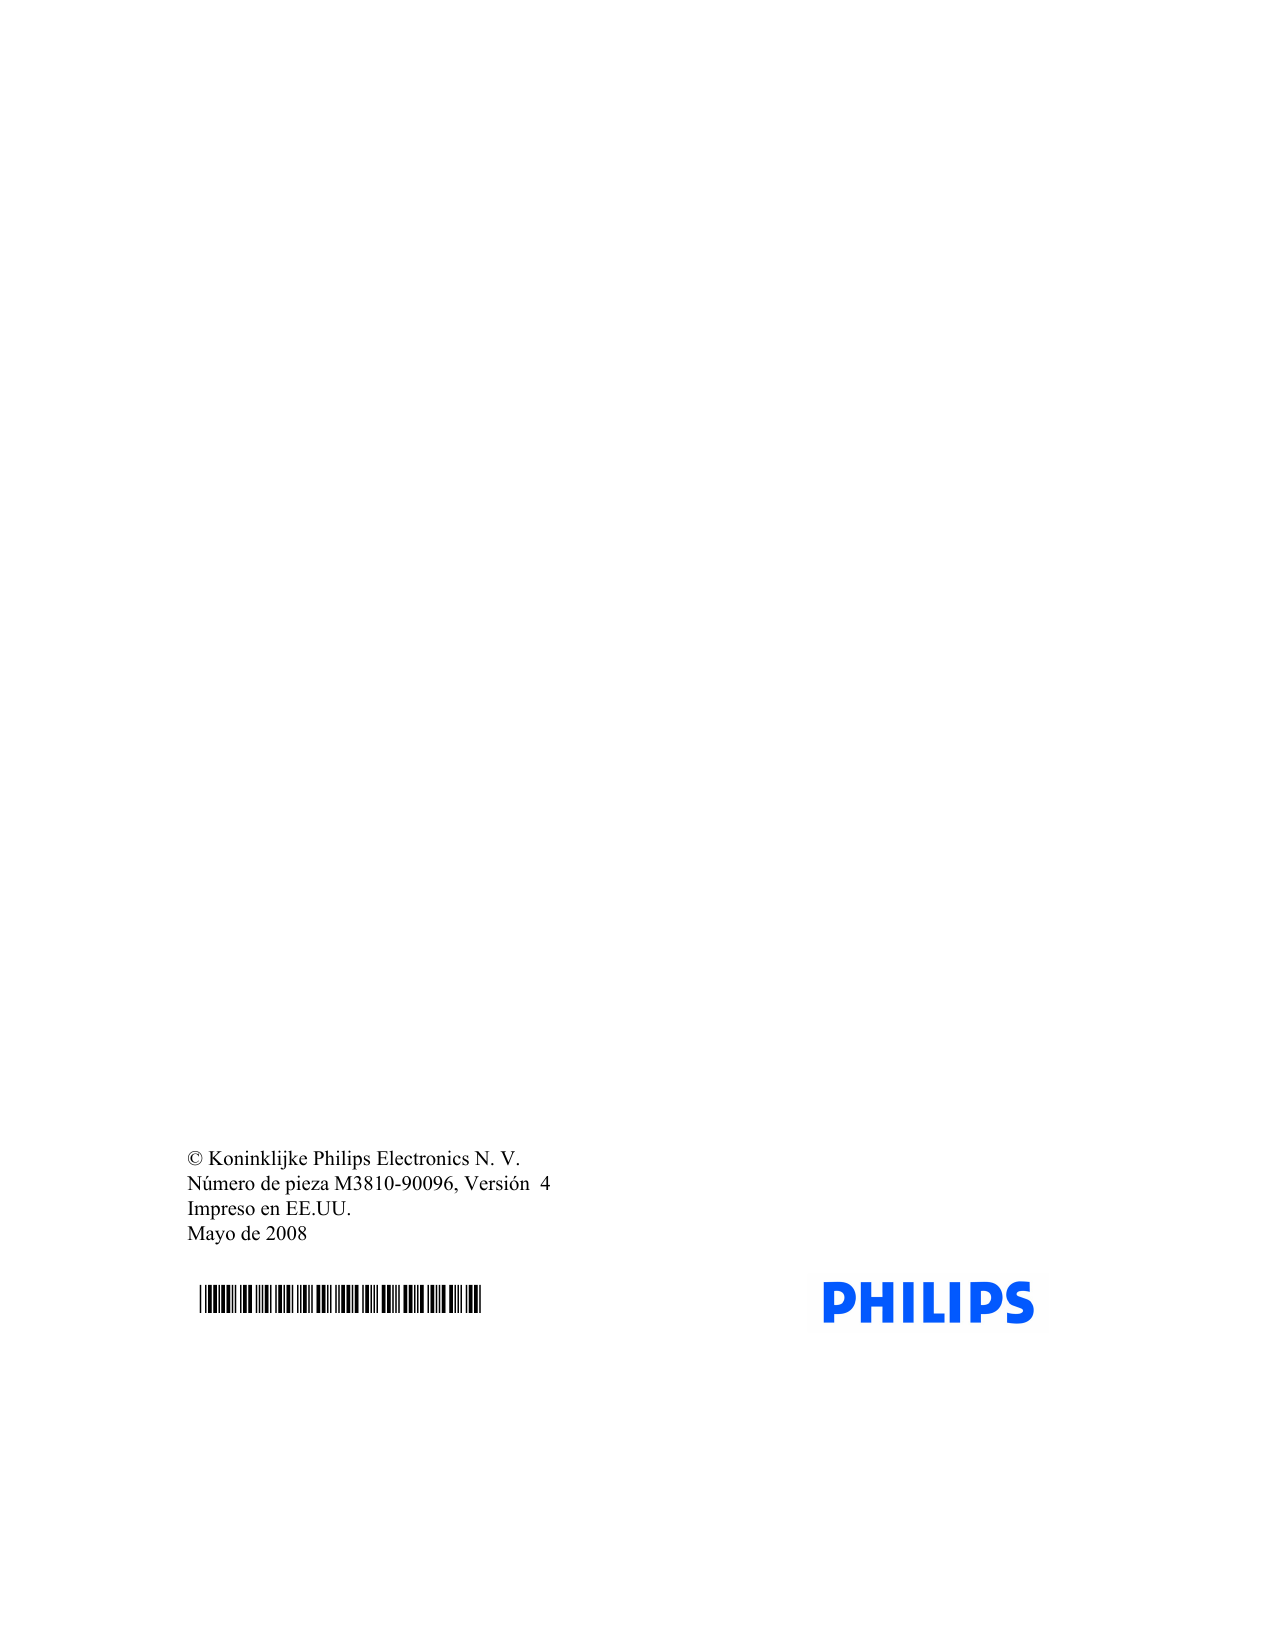 © Koninklijke Philips Electronics N. V.Número de pieza M3810-90096, Versión  4Impreso en EE.UU.Mayo de 2008*M3810-90096*